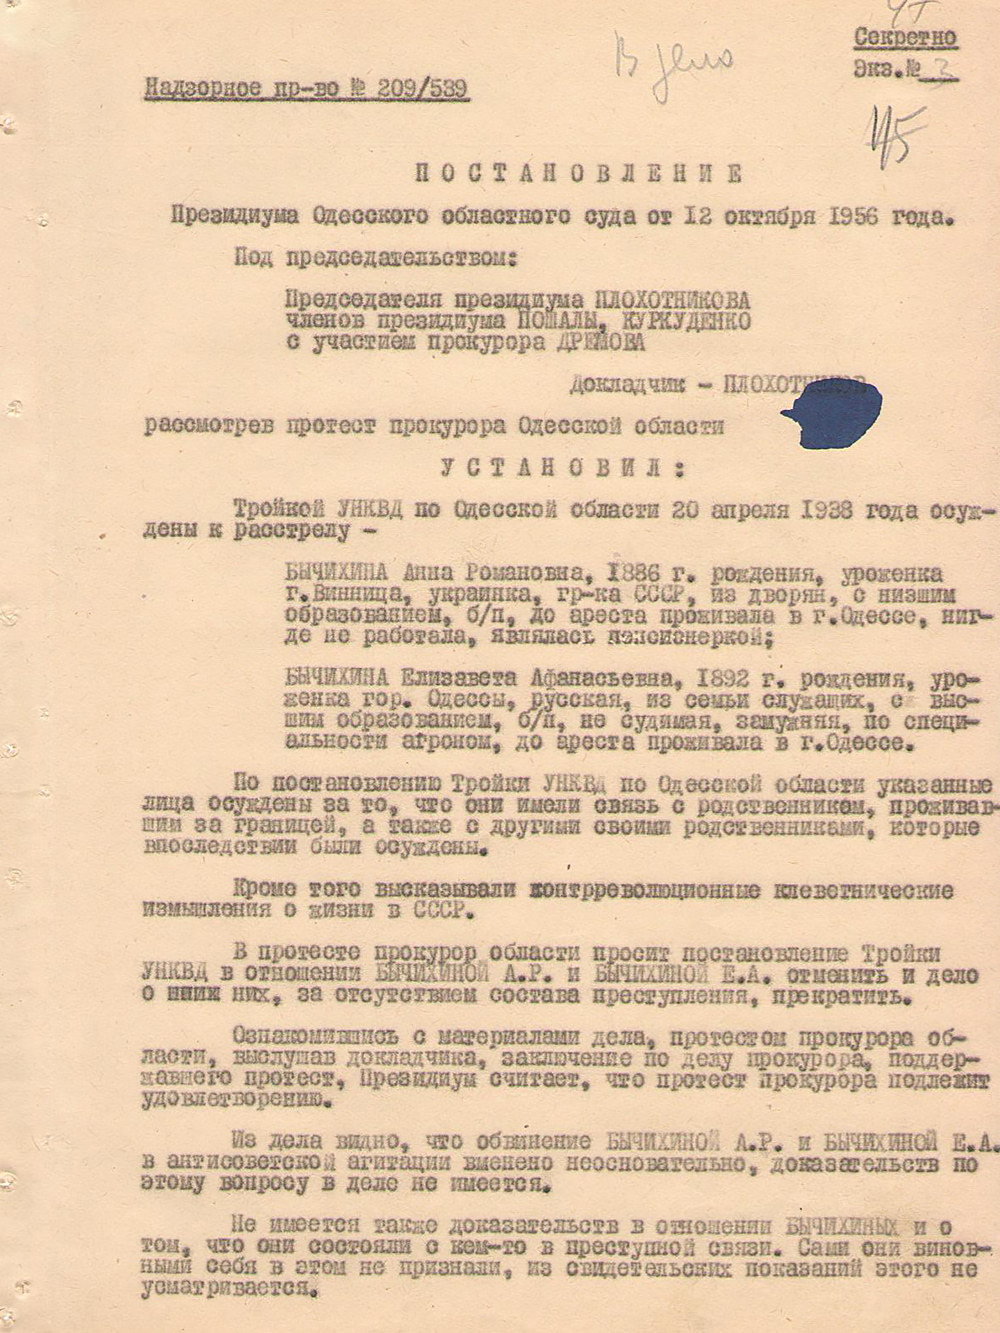 Постановление президиума Одесского областного суда от 1956 года